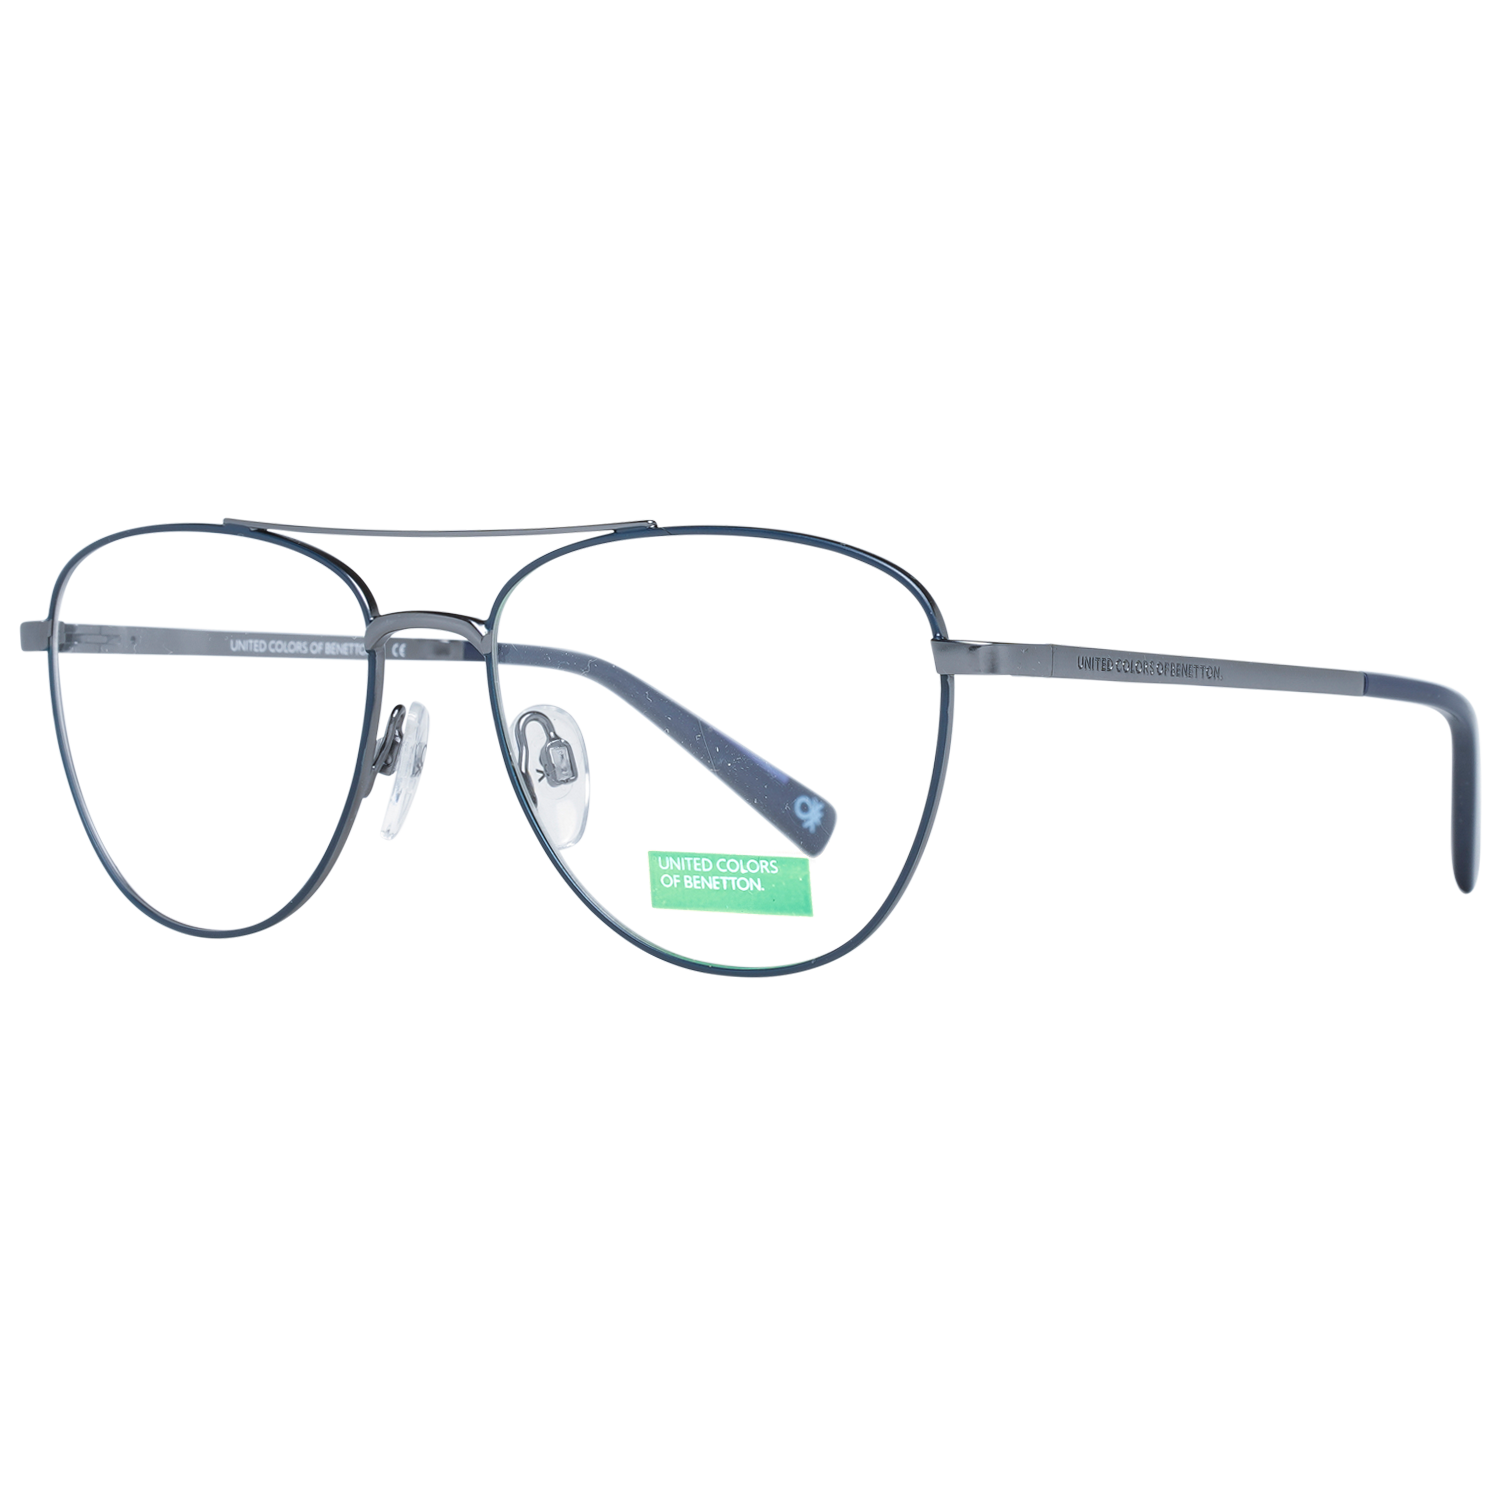 Benetton Frames Benetton Glasses Frames BEO3003 639 53 Eyeglasses Eyewear UK USA Australia 